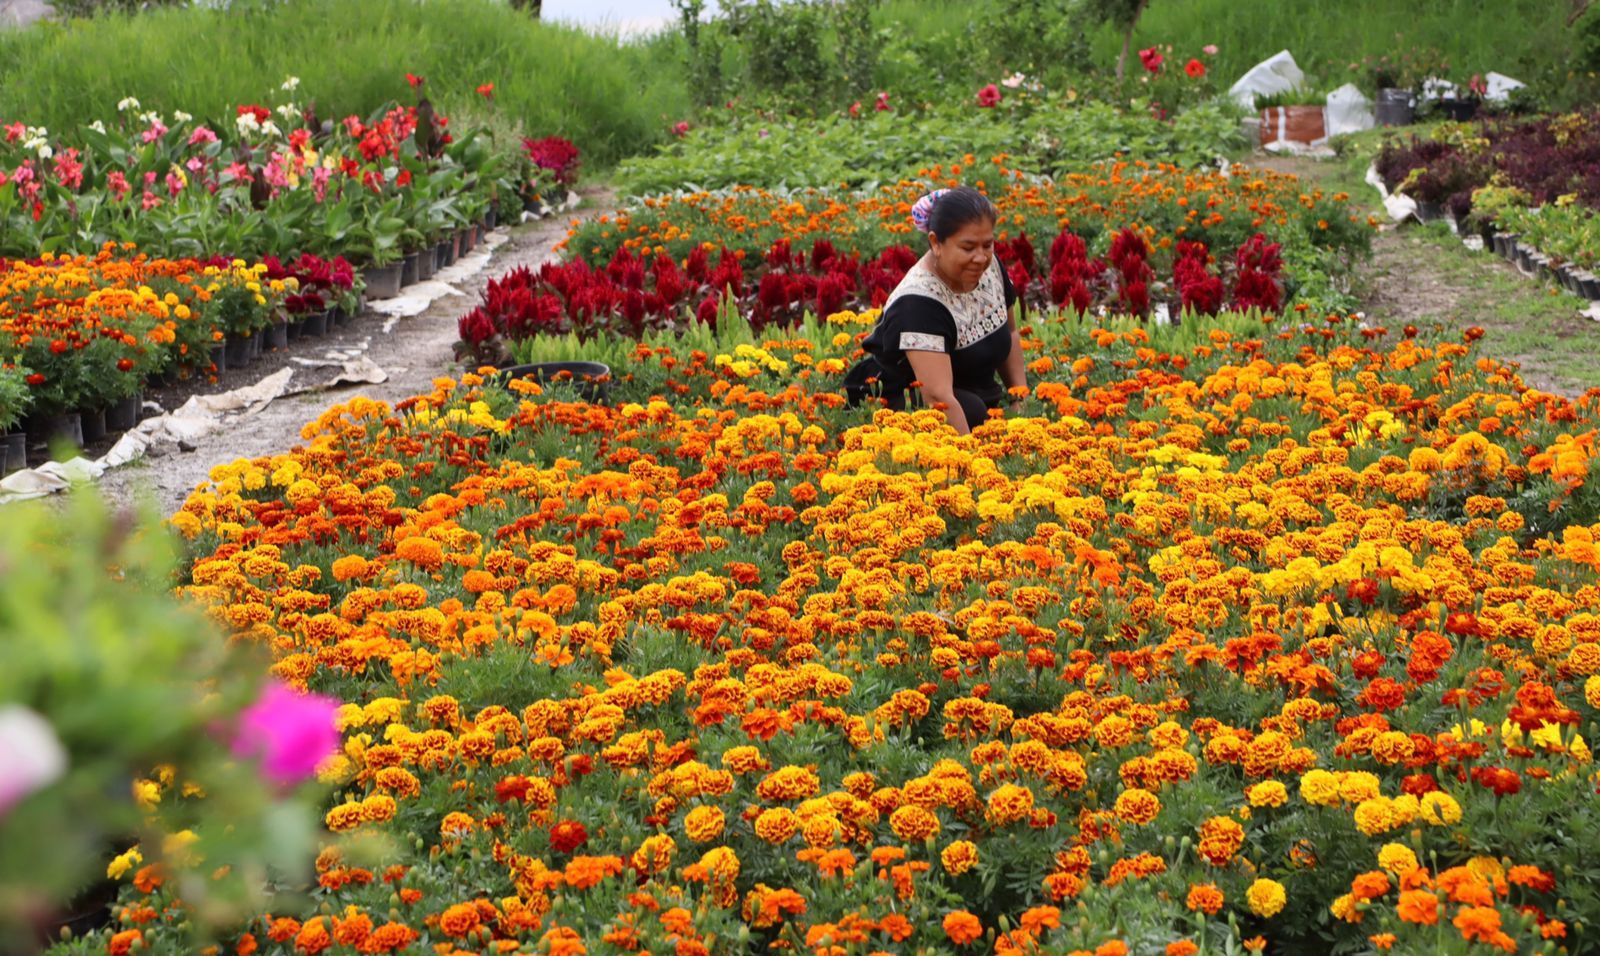 Un jardín con flores de colores

Descripción generada automáticamente